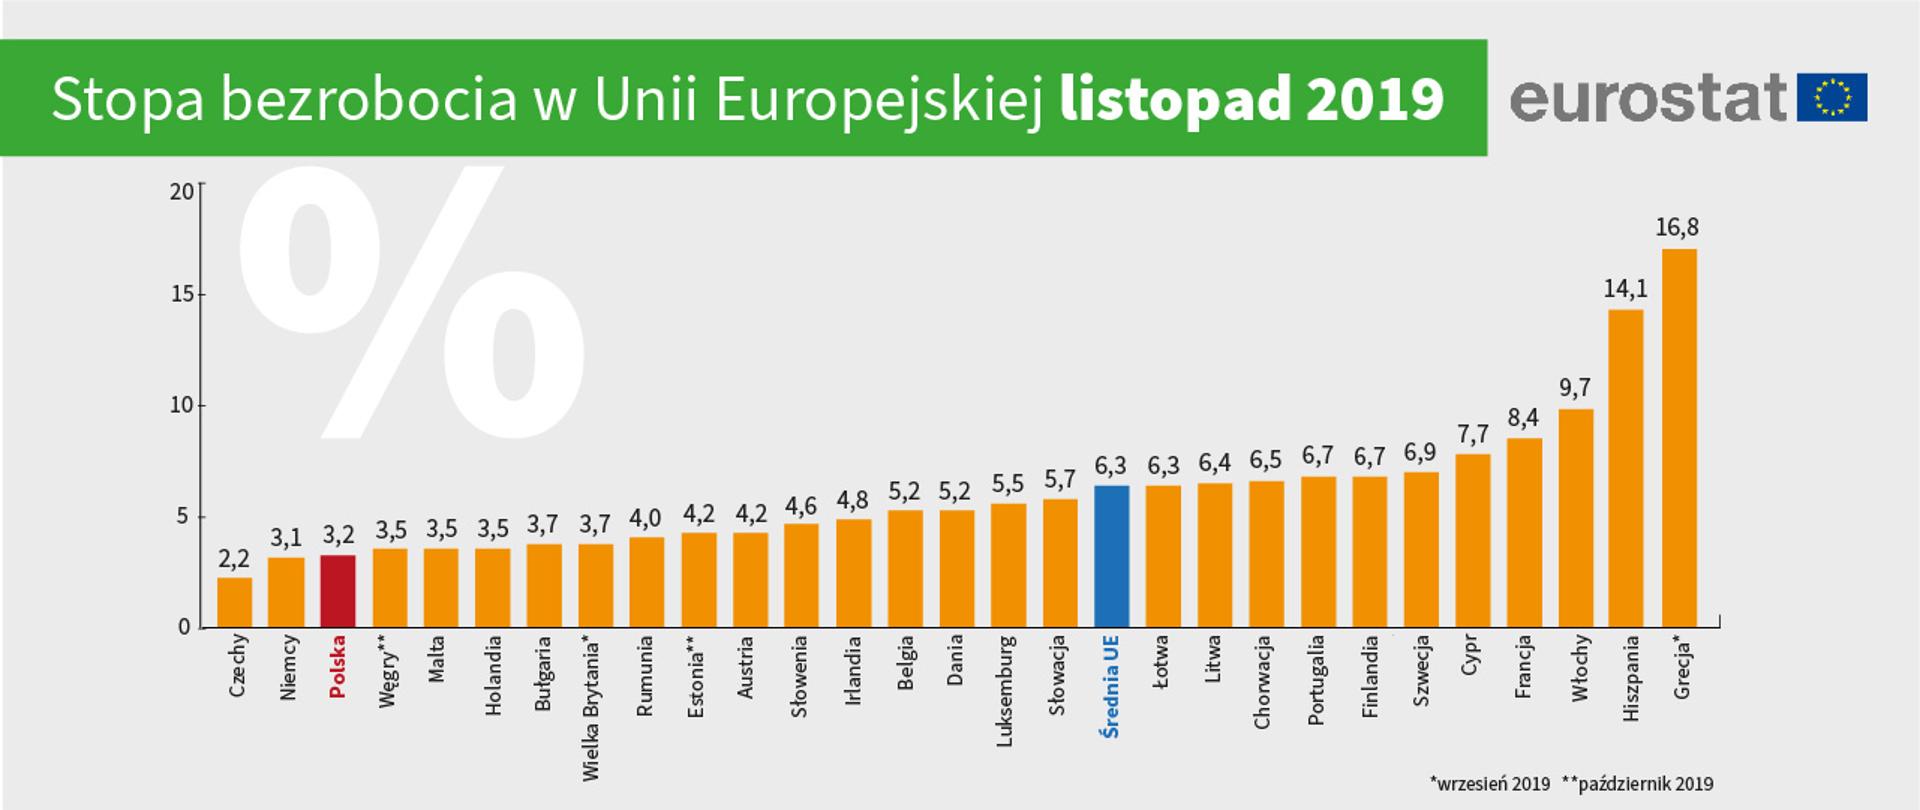 Eurostat Polska Na Podium Krajow Ue Z Najnizszym Bezrobociem Ministerstwo Rodziny I Polityki Spolecznej Portal Gov Pl